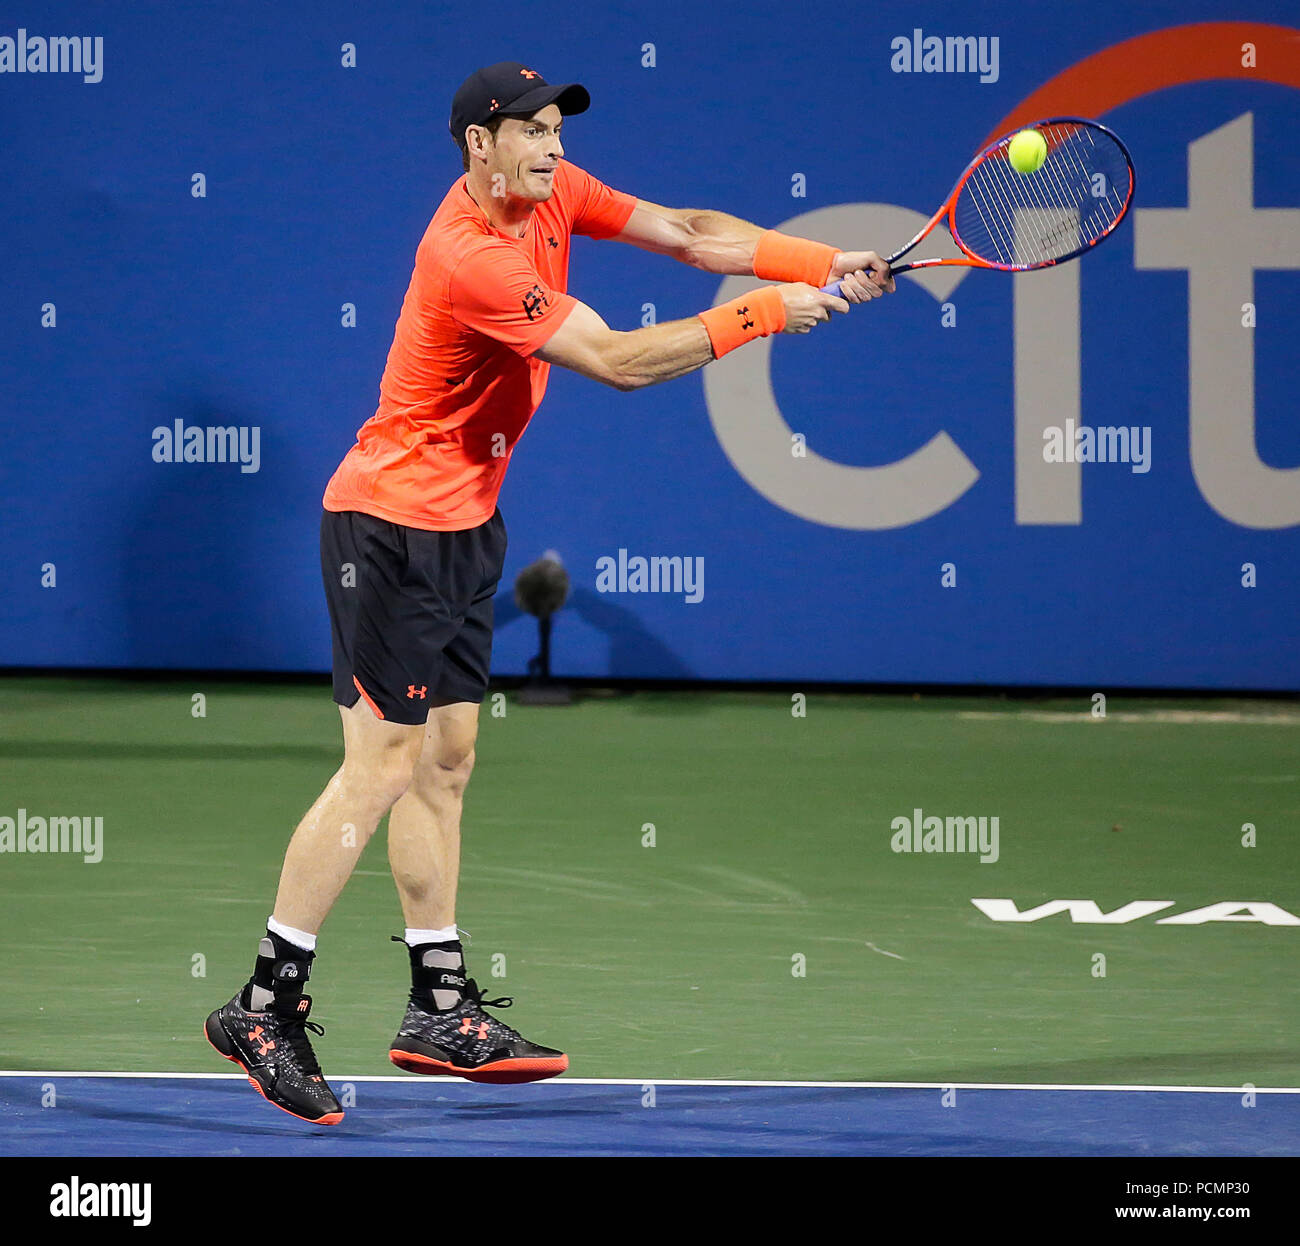 2 août 2018 : Andy Murray s'étend sur un tir de revers au cours d'un match de tennis ouvert Citi à Rock Creek Park, à Washington DC. Justin Cooper/CSM Banque D'Images